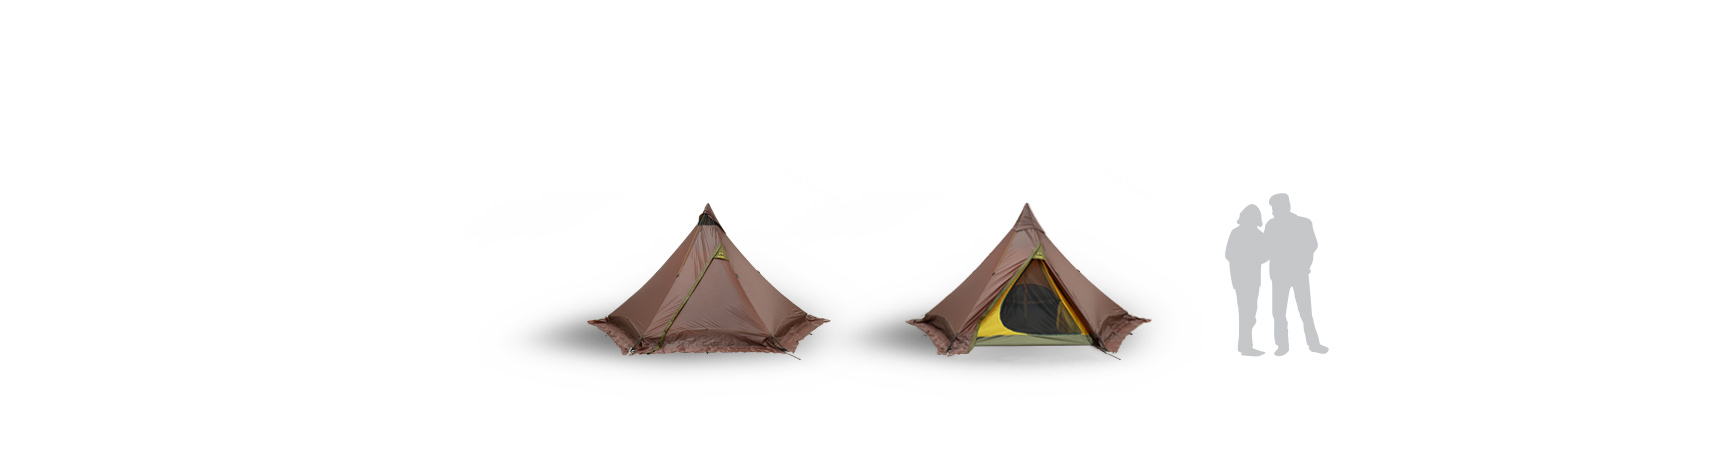 2018 Olivin Tent Range wp